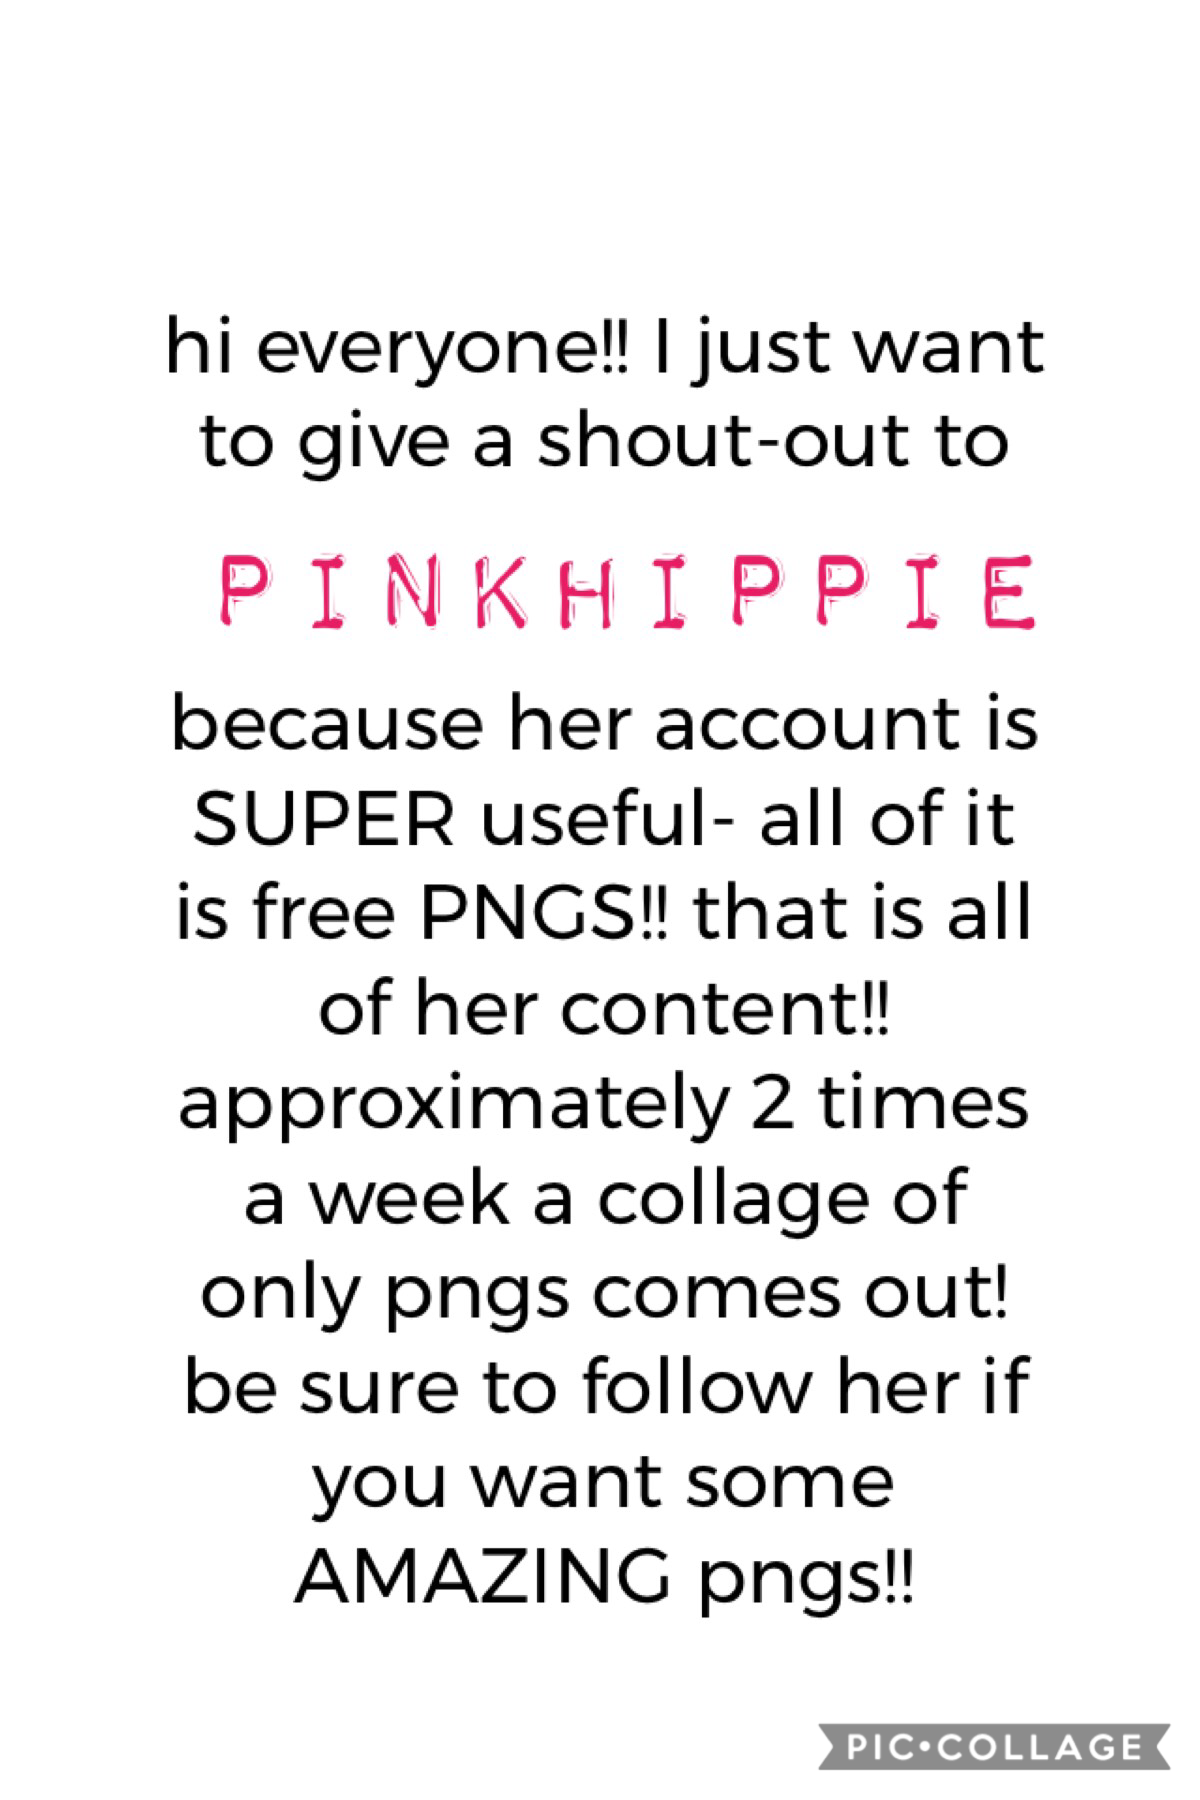 PLEASE go follow her!!!